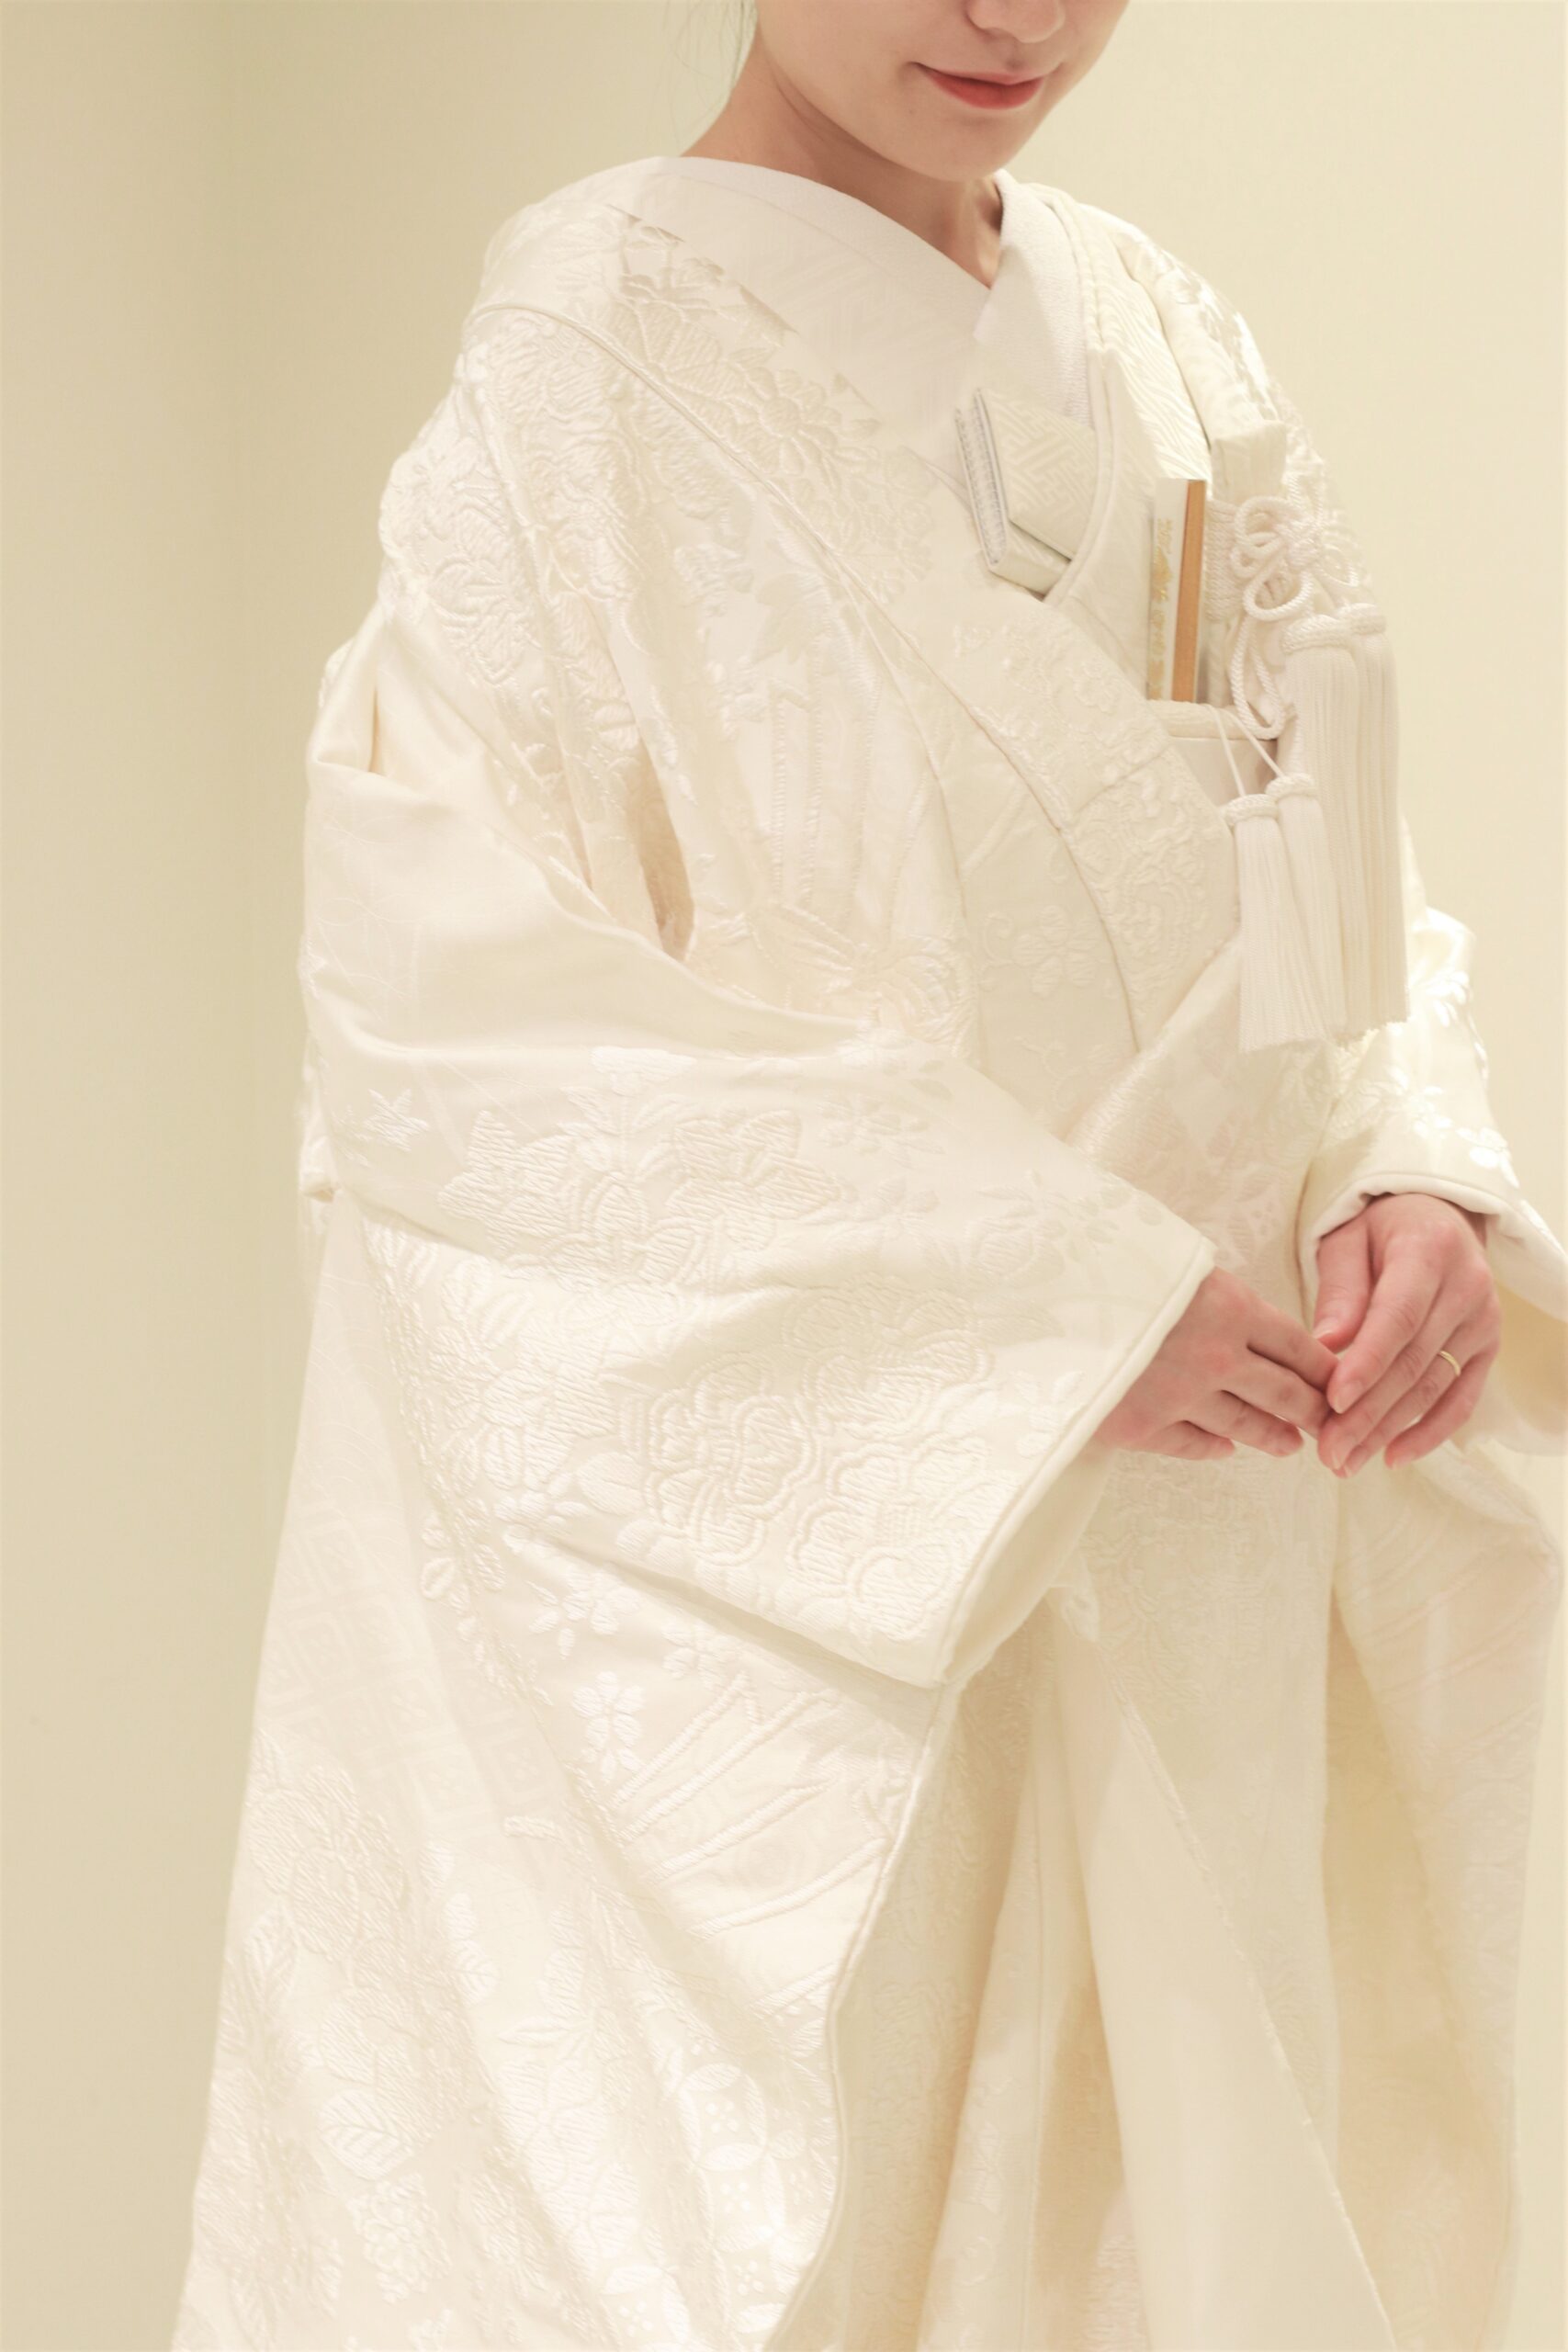 東京の人気ドレスショップでは、日本の花嫁にこそお召しいただきたい白無垢を数多くお取り扱いしております。